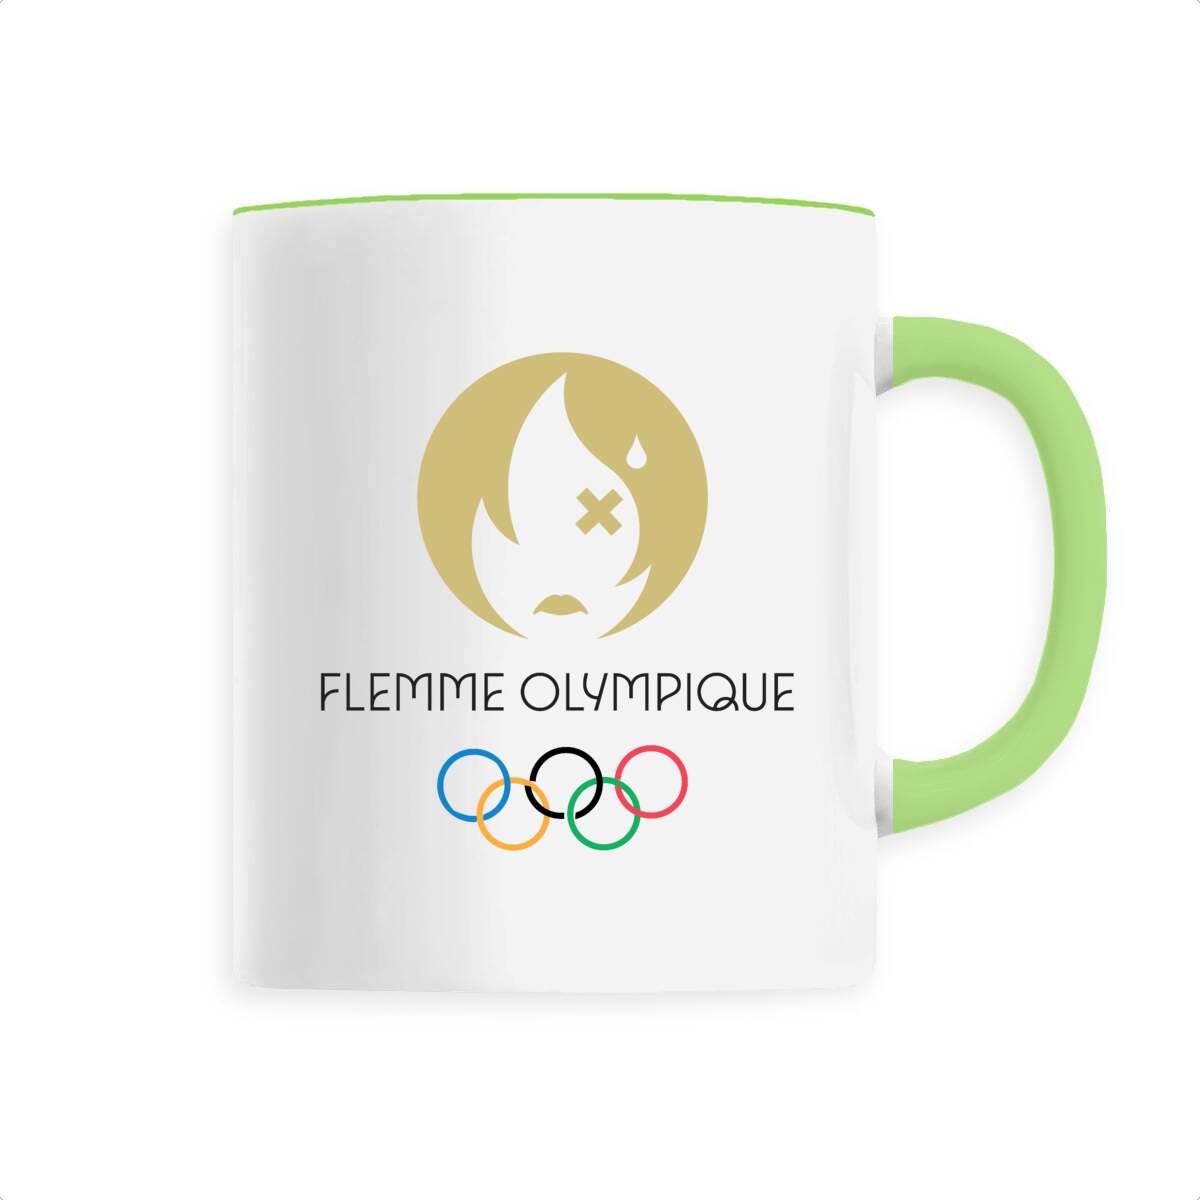 Le mug de la flemme olympique